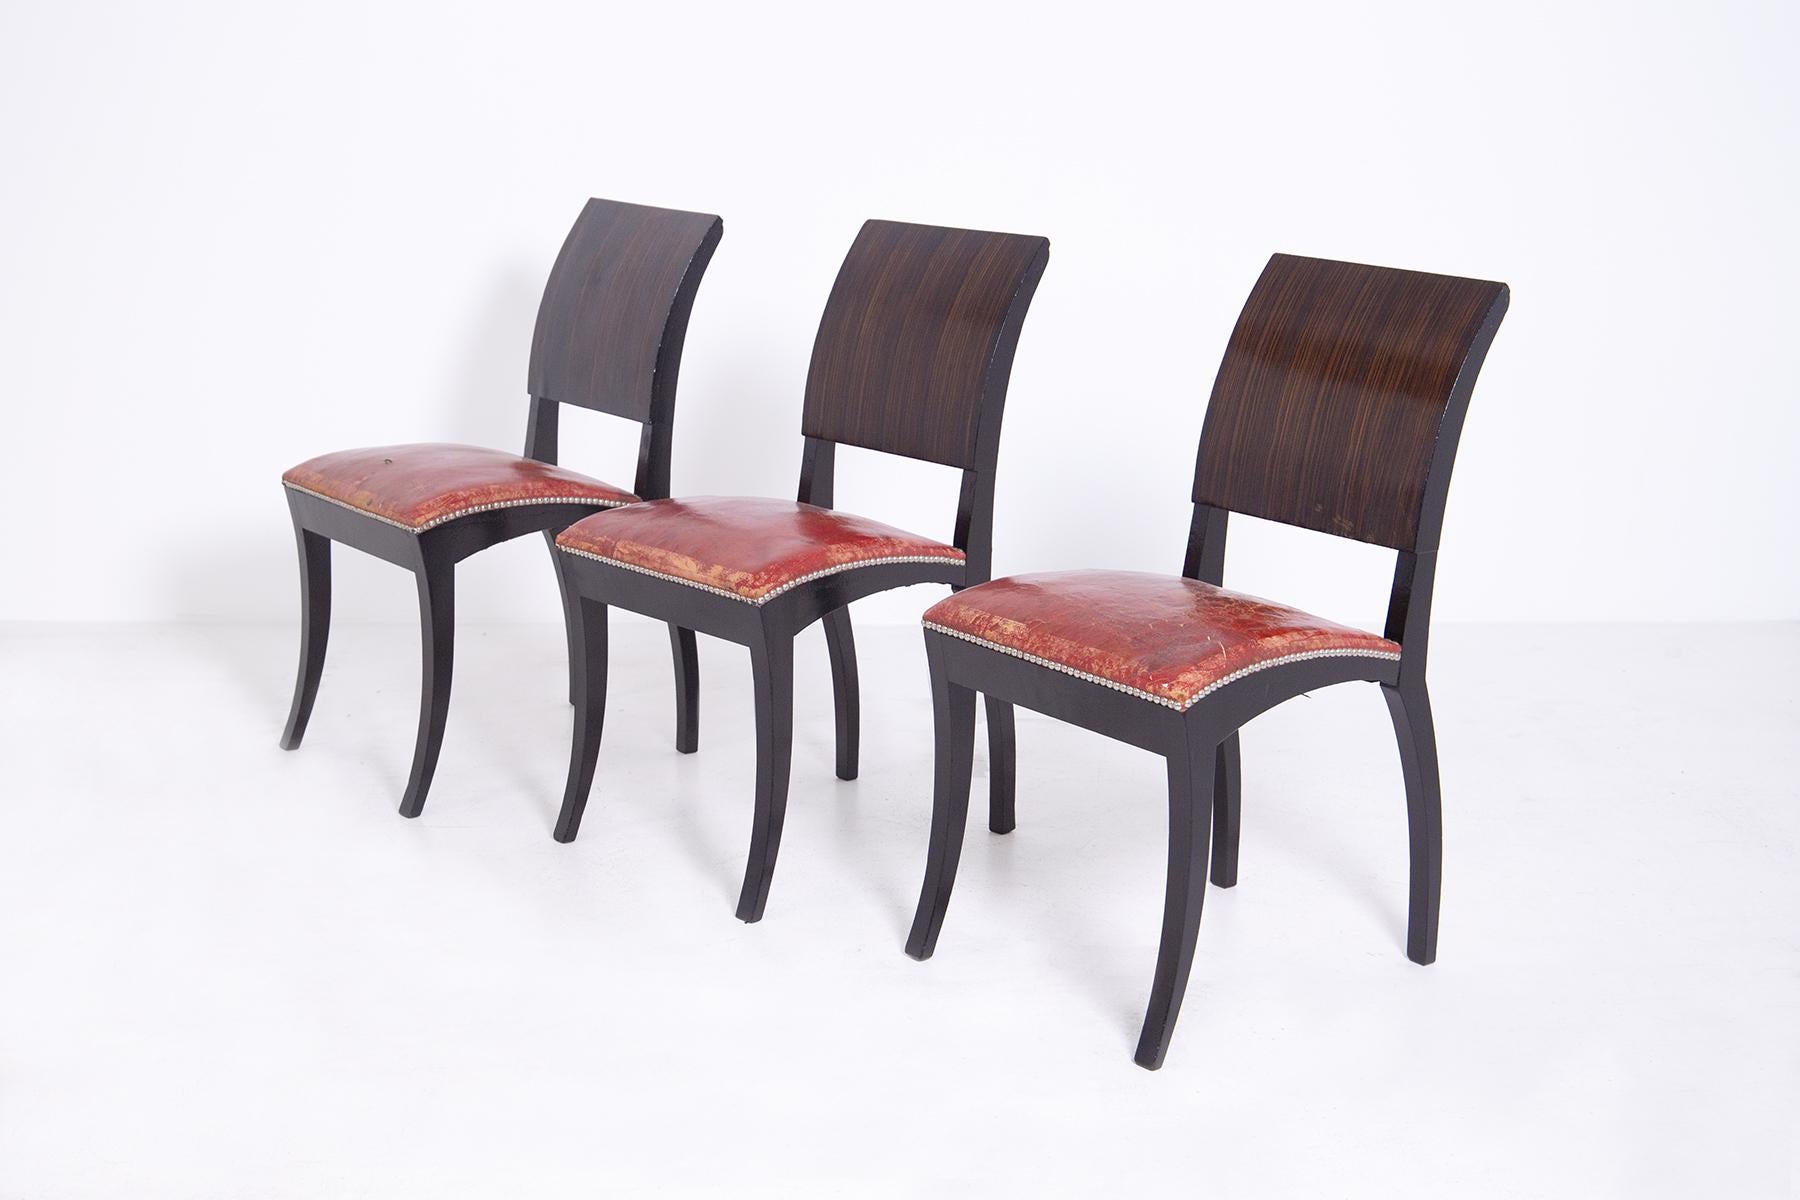 Wunderschönes Set bestehend aus sechs französischen Stühlen Art Deco aus den 1920er-1930er Jahren.
Die Struktur der französischen Stühle wurde aus massivem und feinem Holz gefertigt, die Sitzfläche ist aus rotem Leder und die Seiten wurden mit